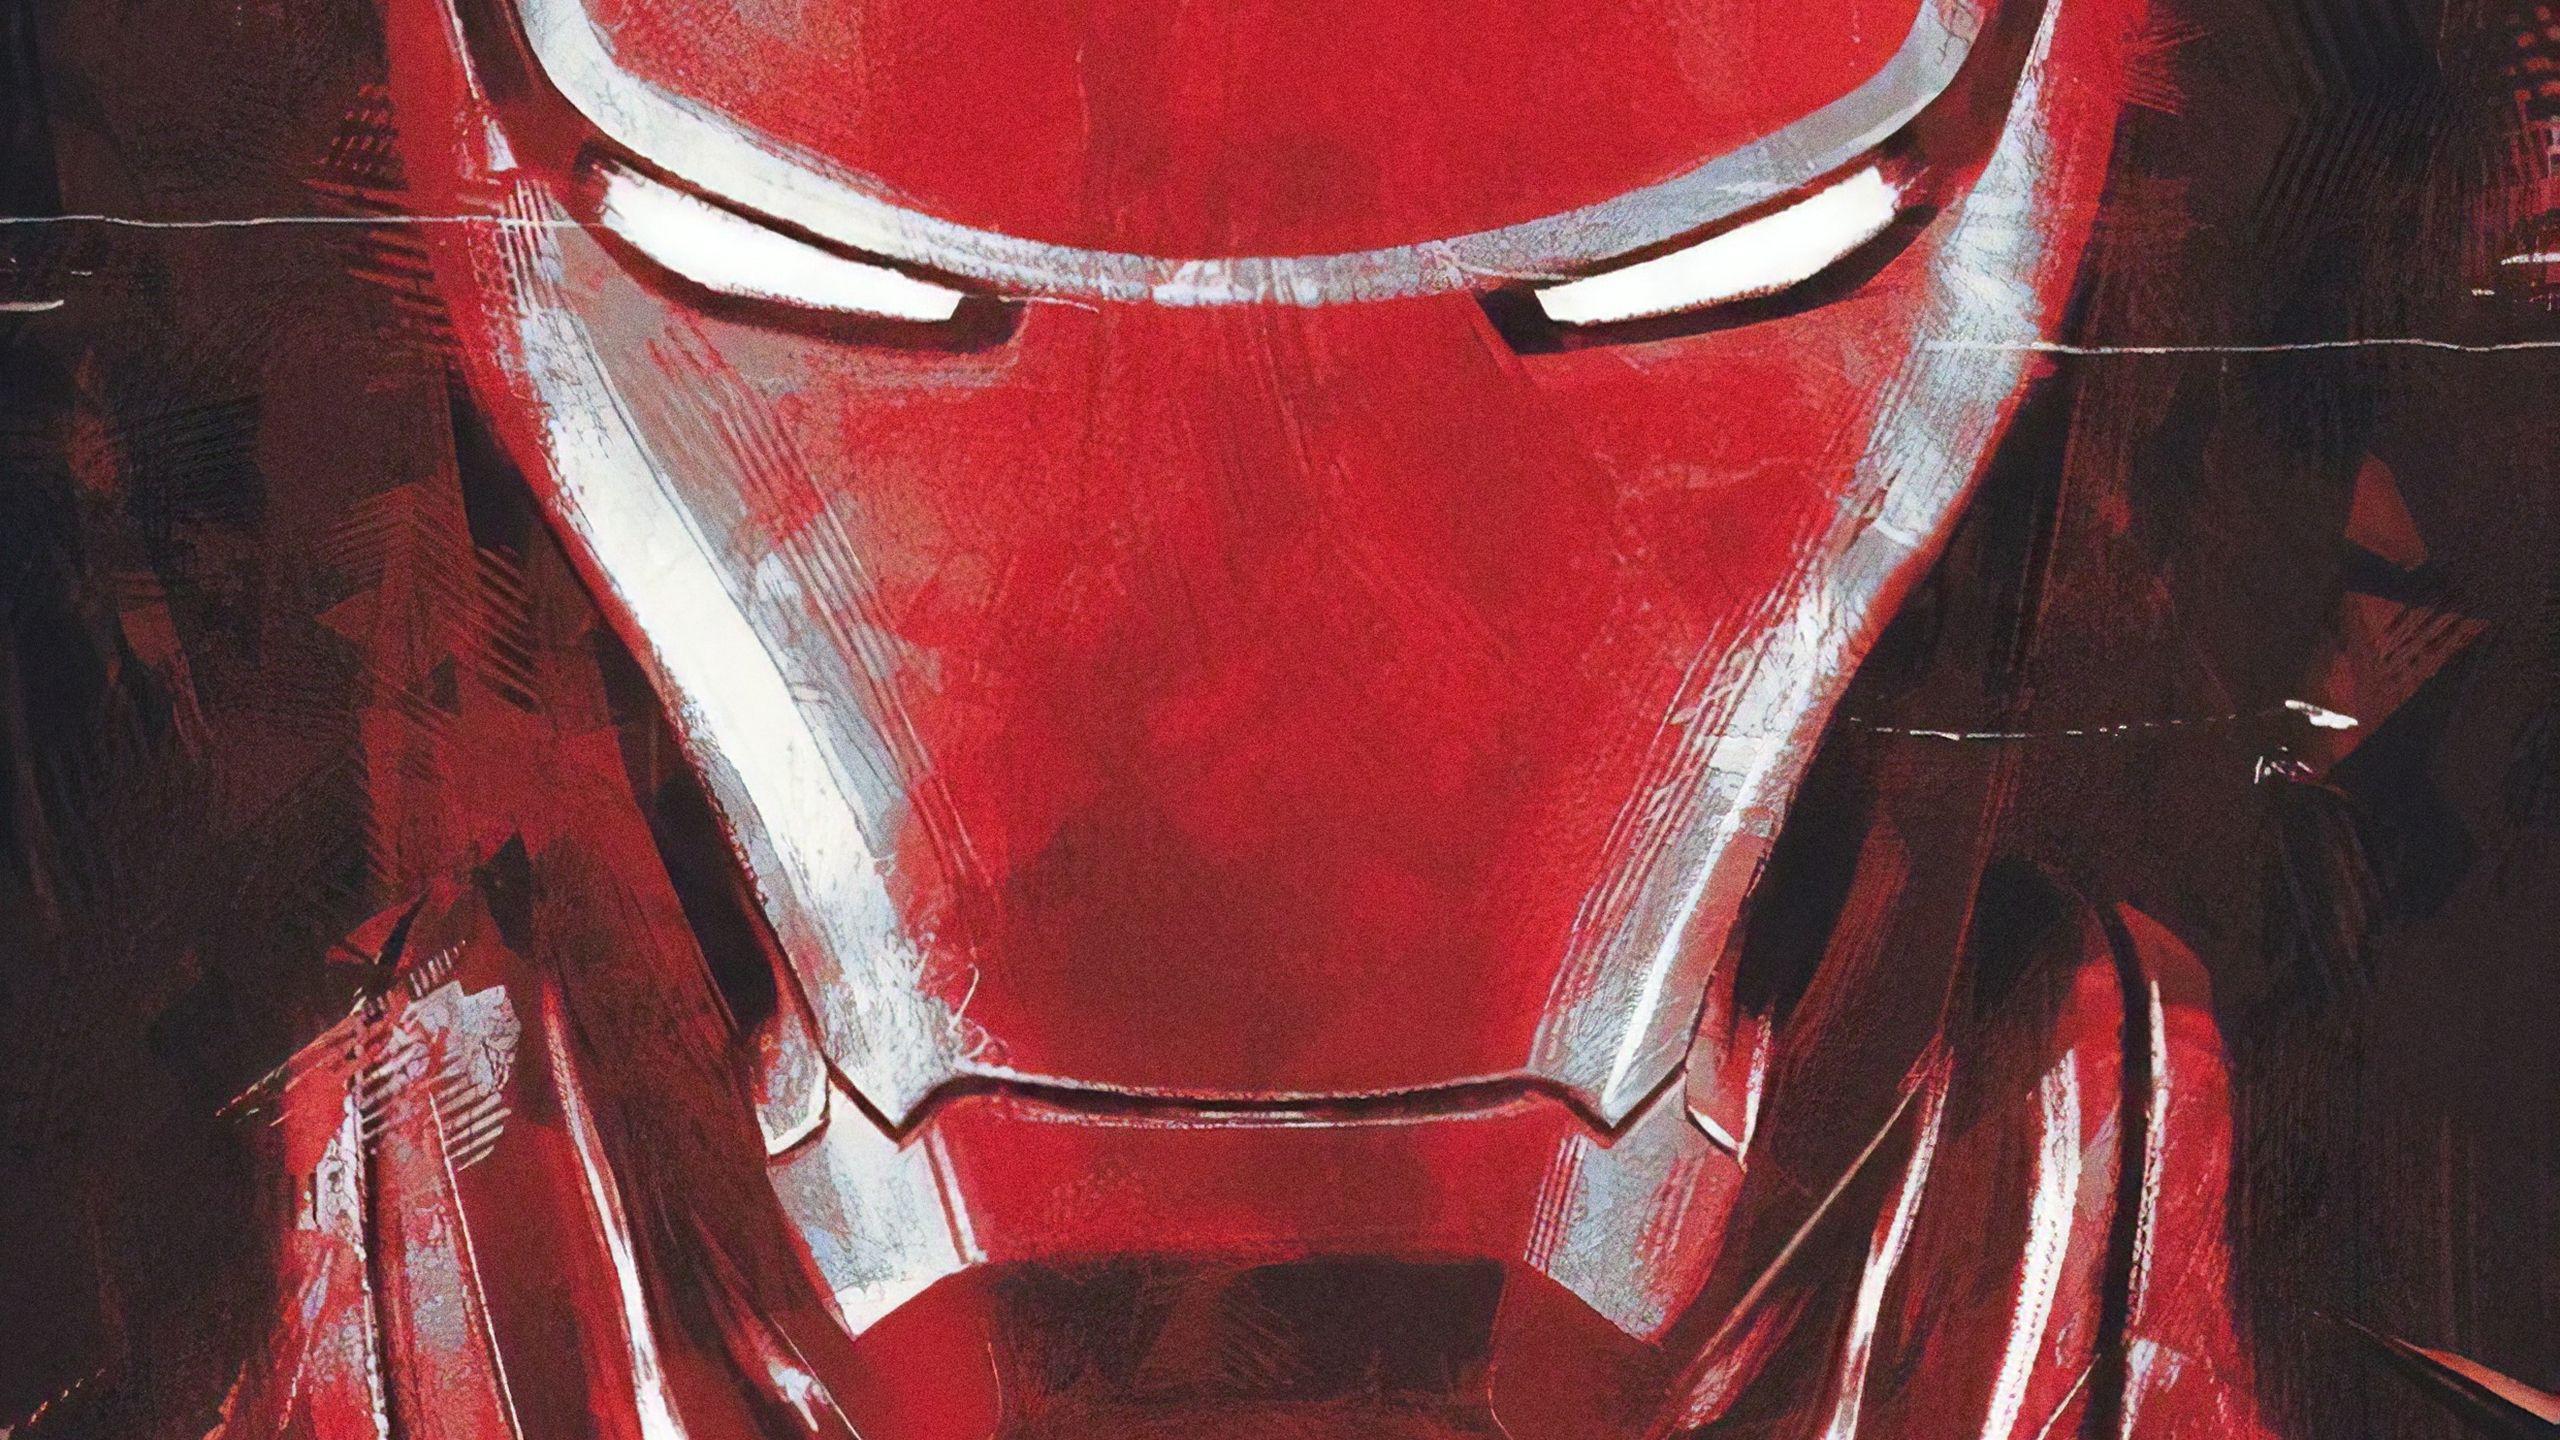 Iron Man in Avengers 4 Endgame Wallpaper